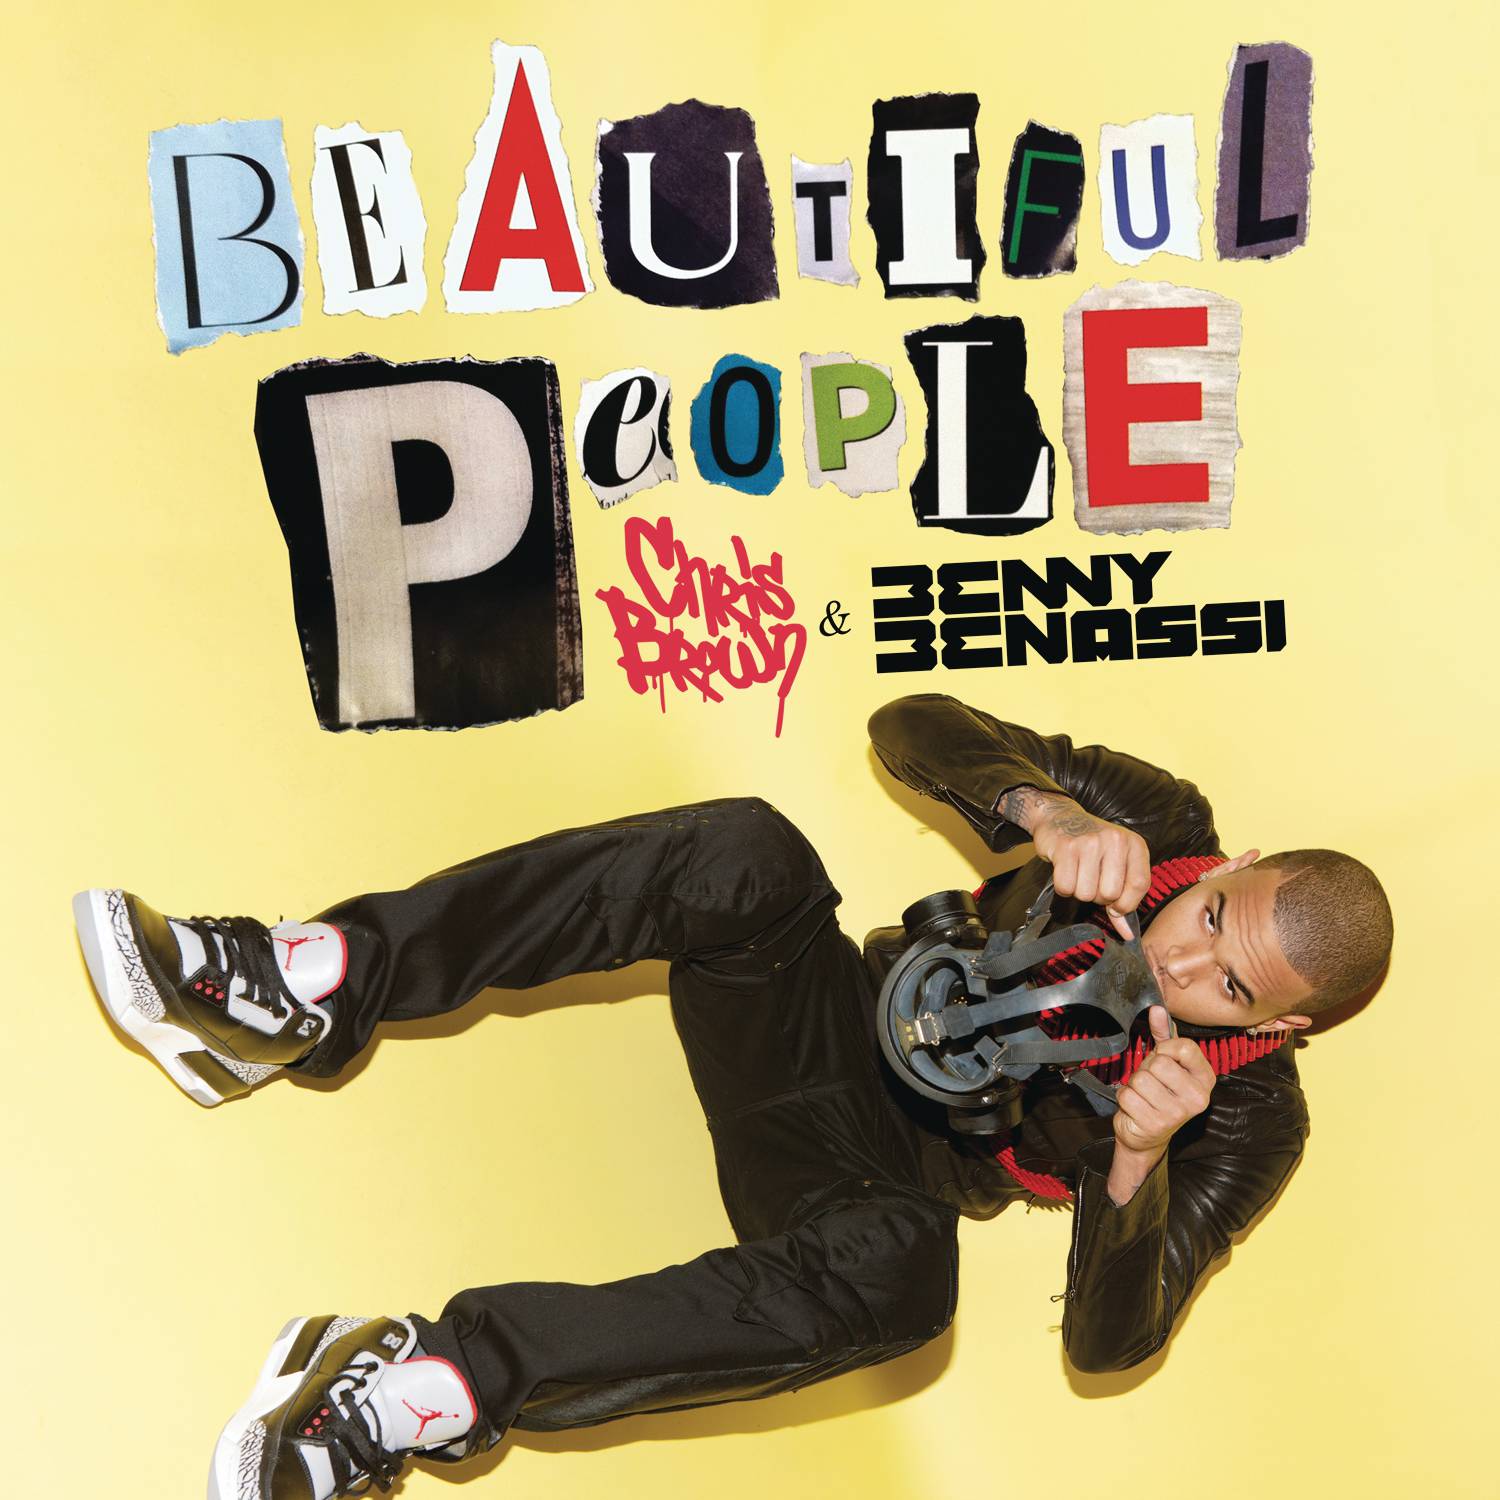 Beautiful People (Radio Edit)